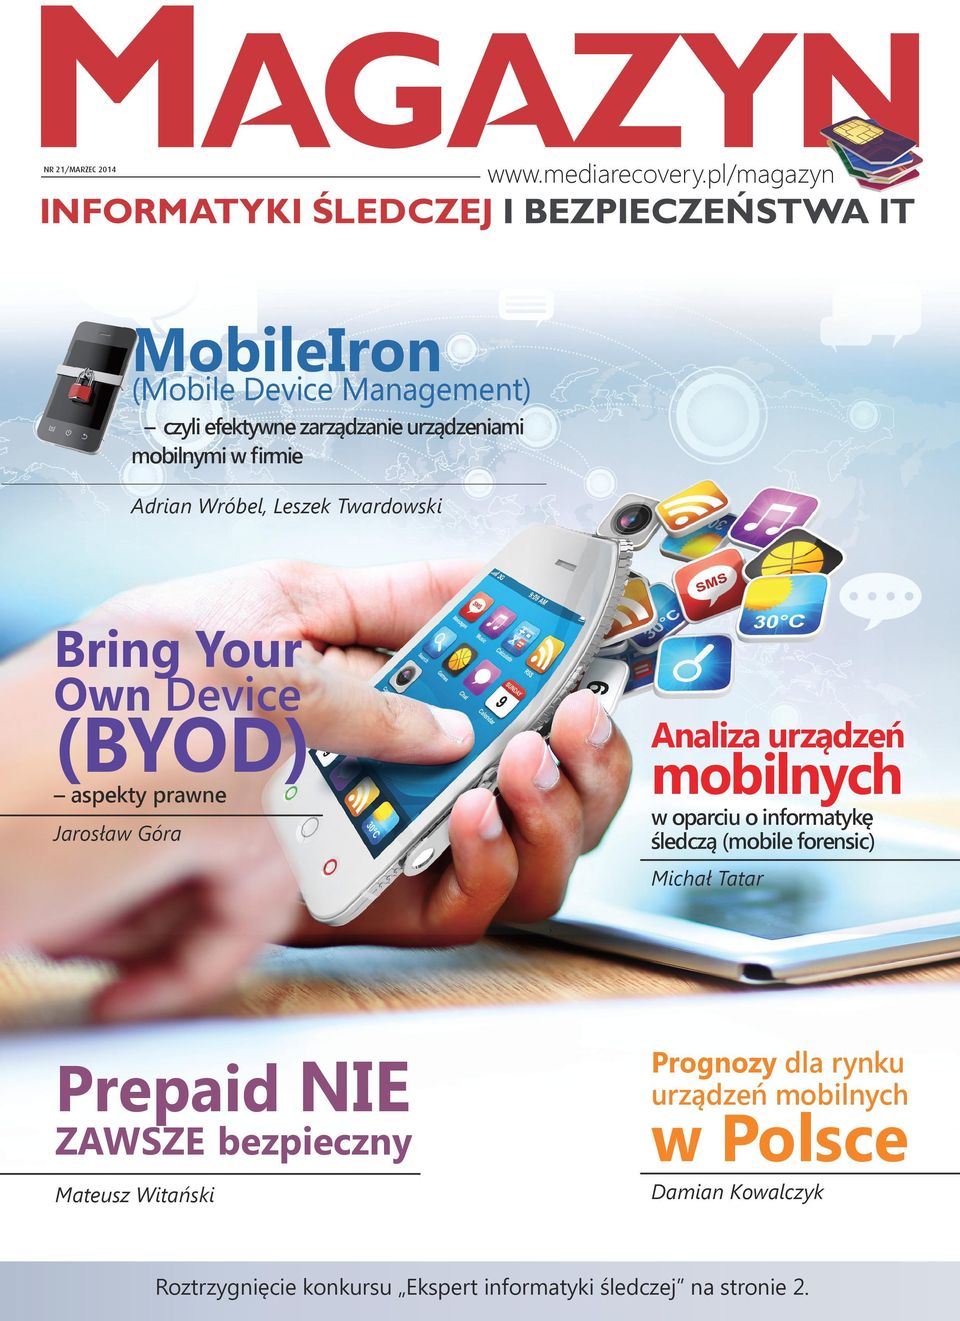 Leszek Twardowski Bring Your Own Device (BYOD) Analiza urządzeń Jarosław Góra w oparciu o informatykę śledczą (mobile forensic) aspekty prawne